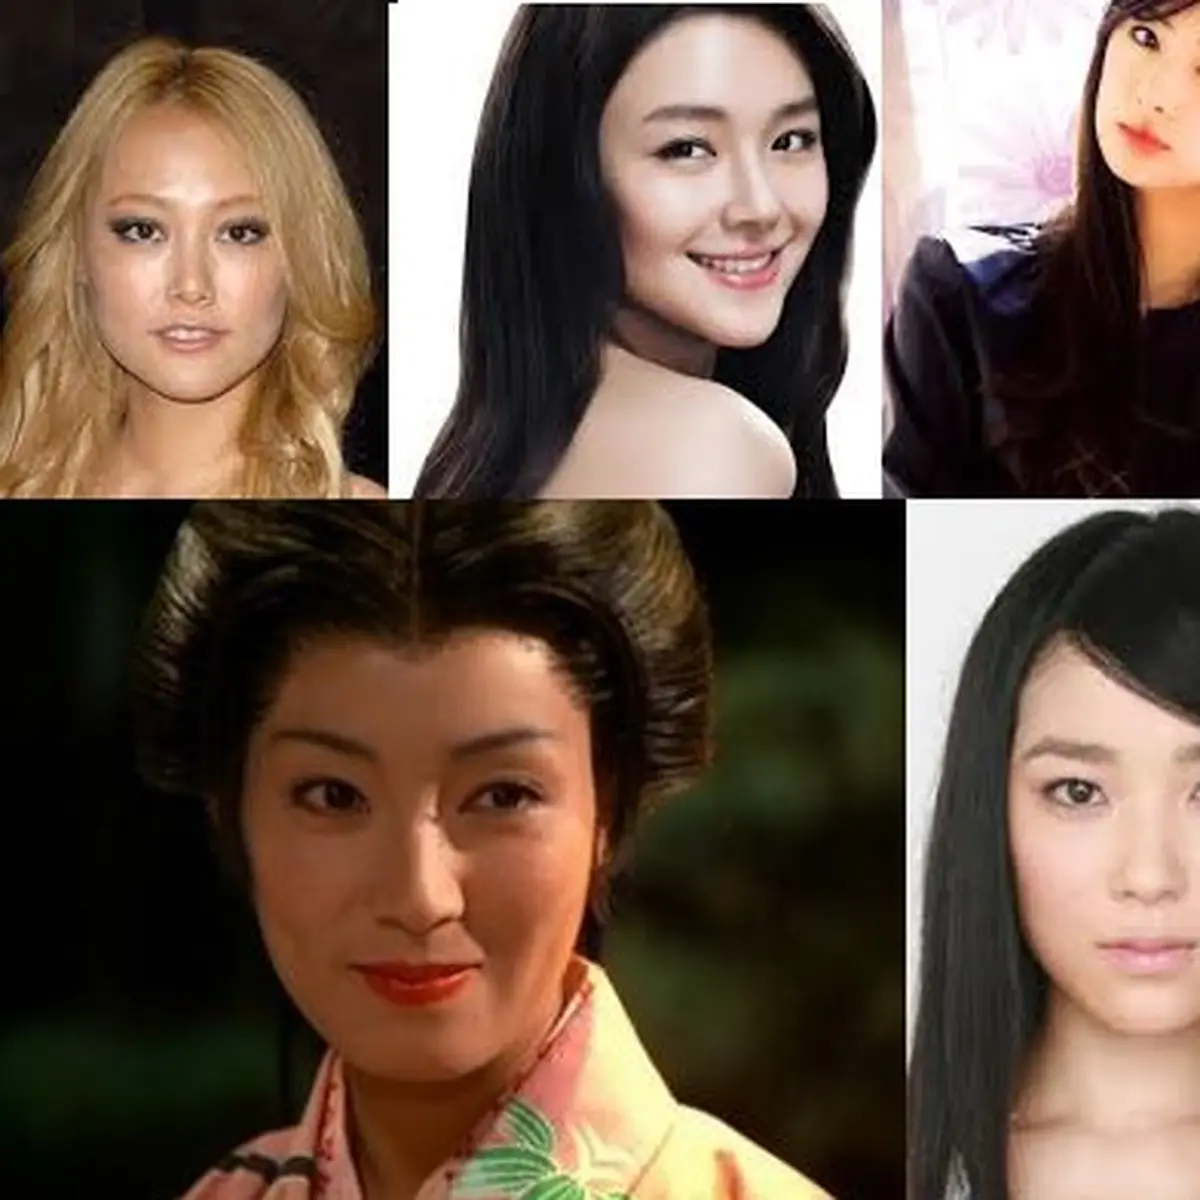 Bokeo Jepang - 10 Aktris Cantik Jepang yang Terkenal di Hollywood - ShowBiz Liputan6.com